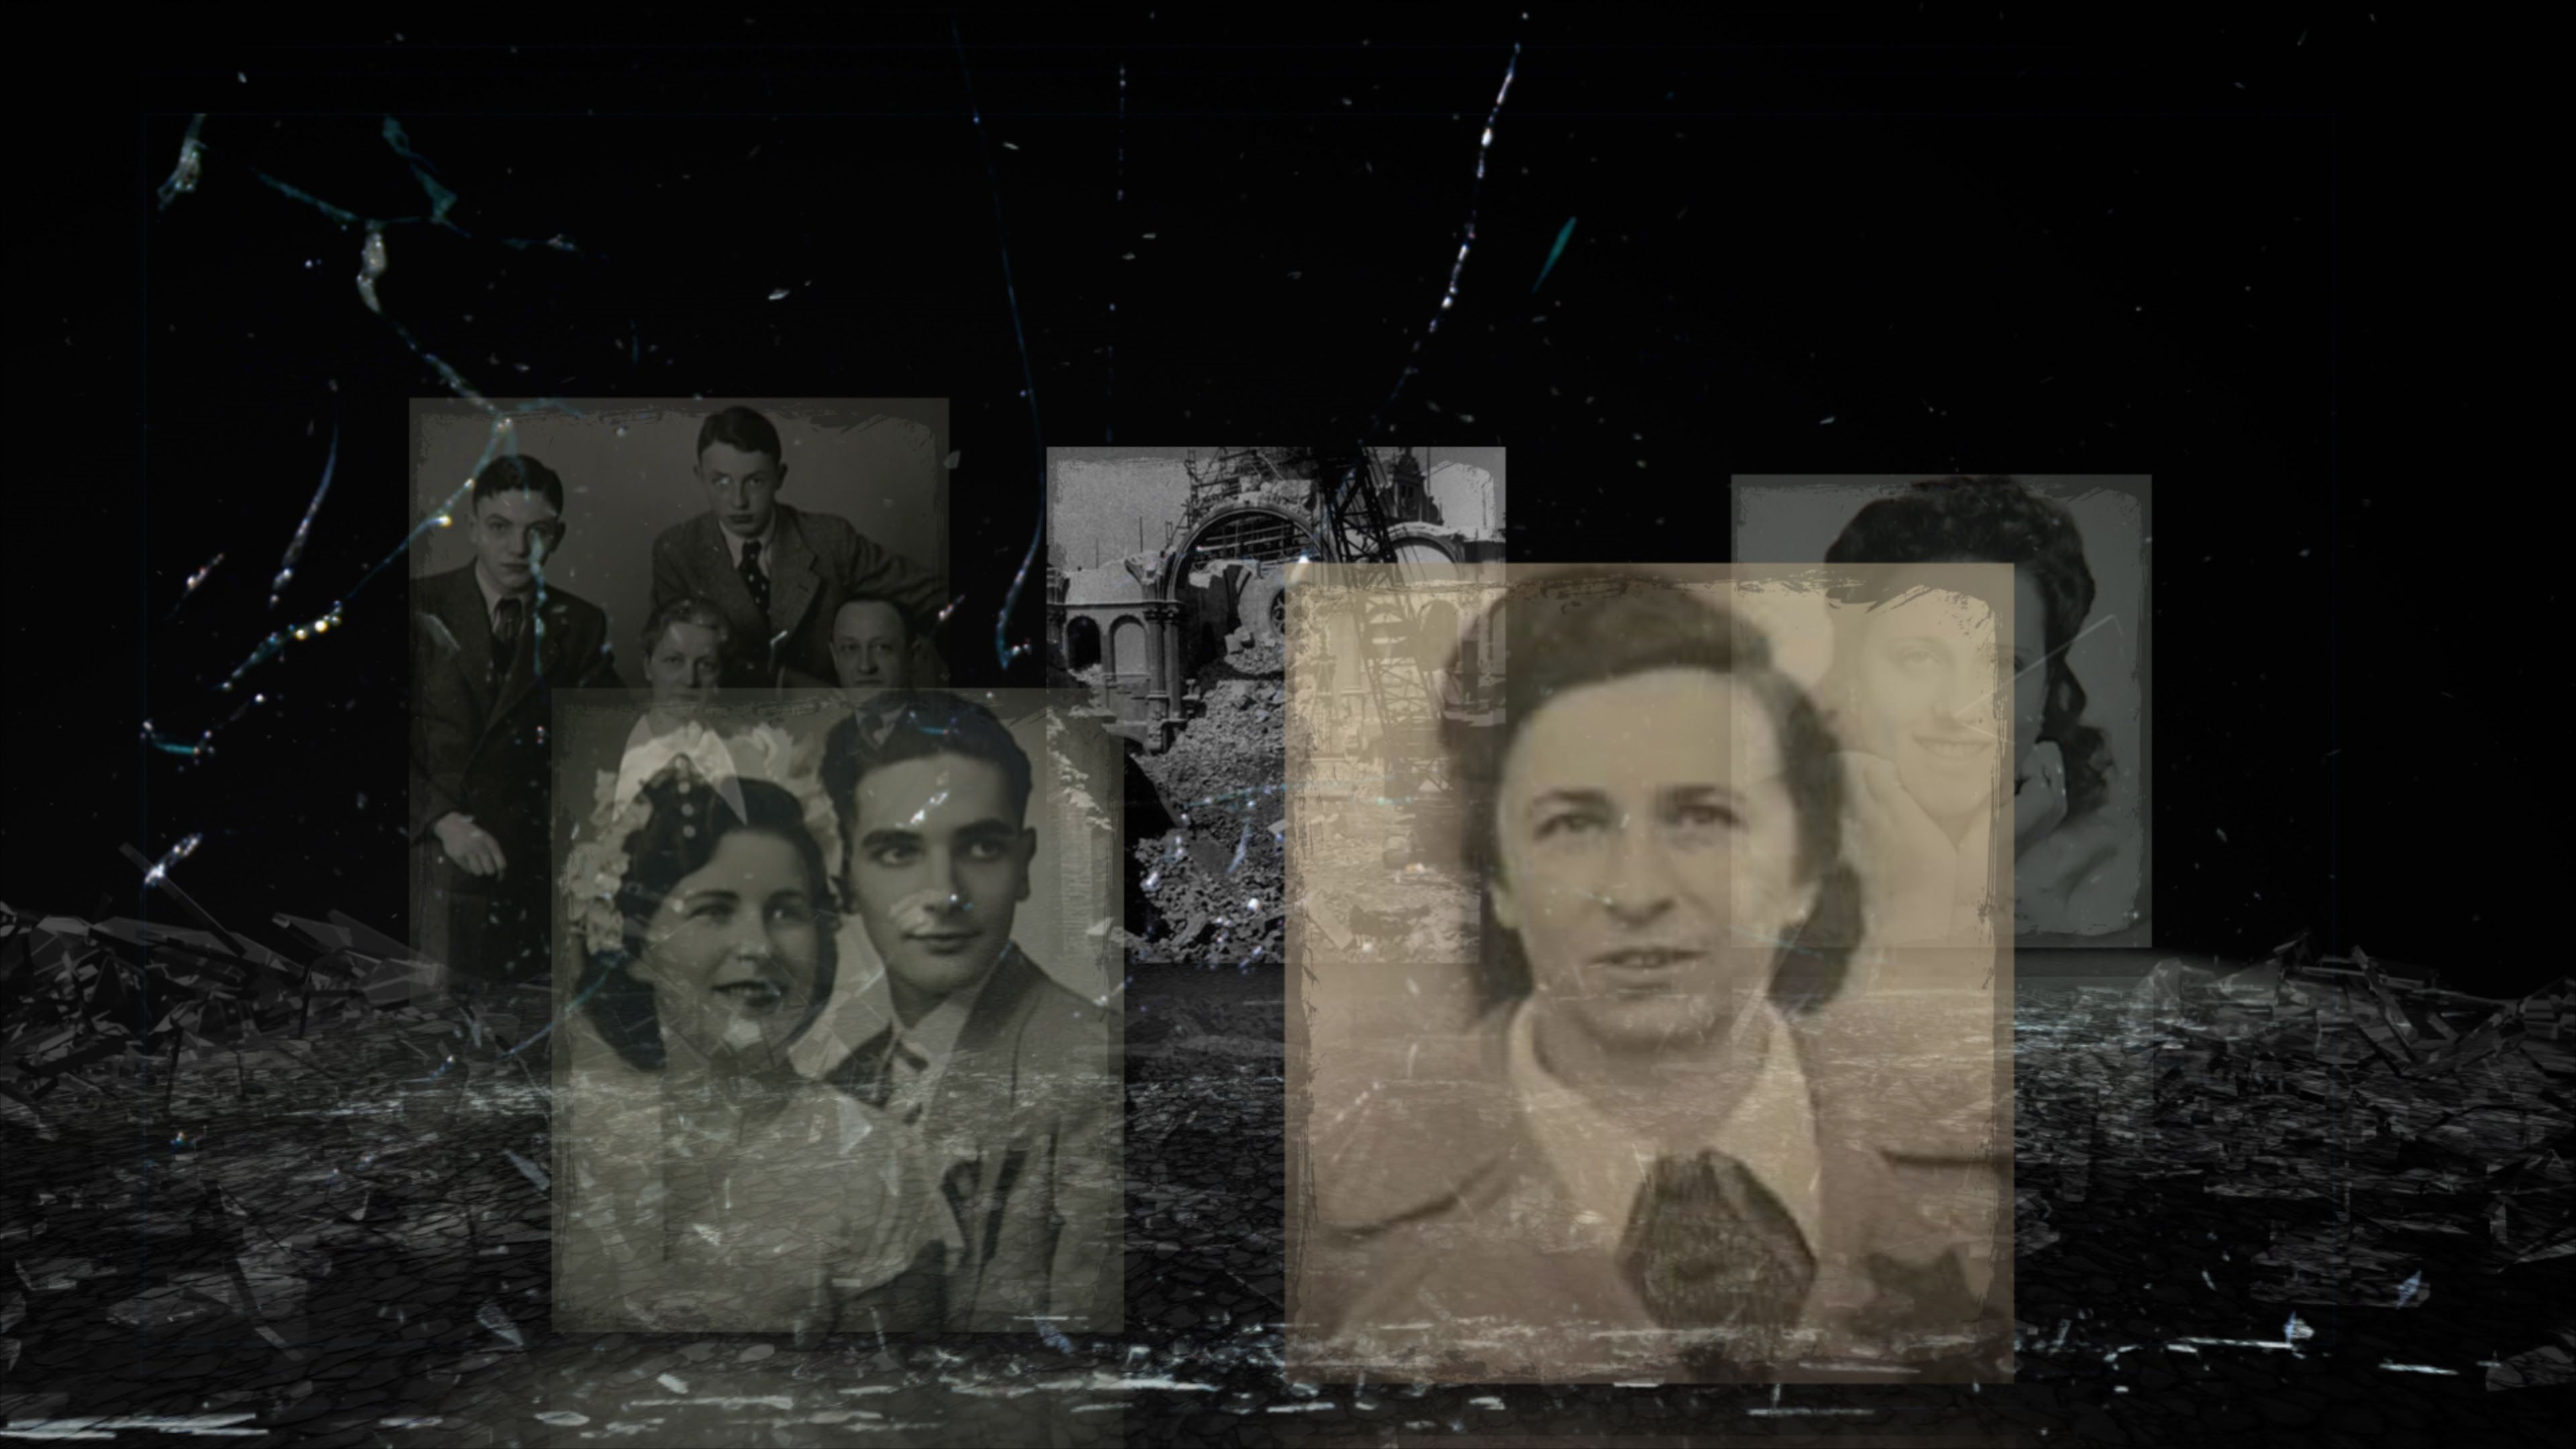 В VR-проекте Inside Kristallnacht доктор Шарлотта Кноблох, пережившая Холокост, выступает в роли рассказчика, который проведет пользователей через моменты до, во время и после этого ключевого события в истории Холокоста.